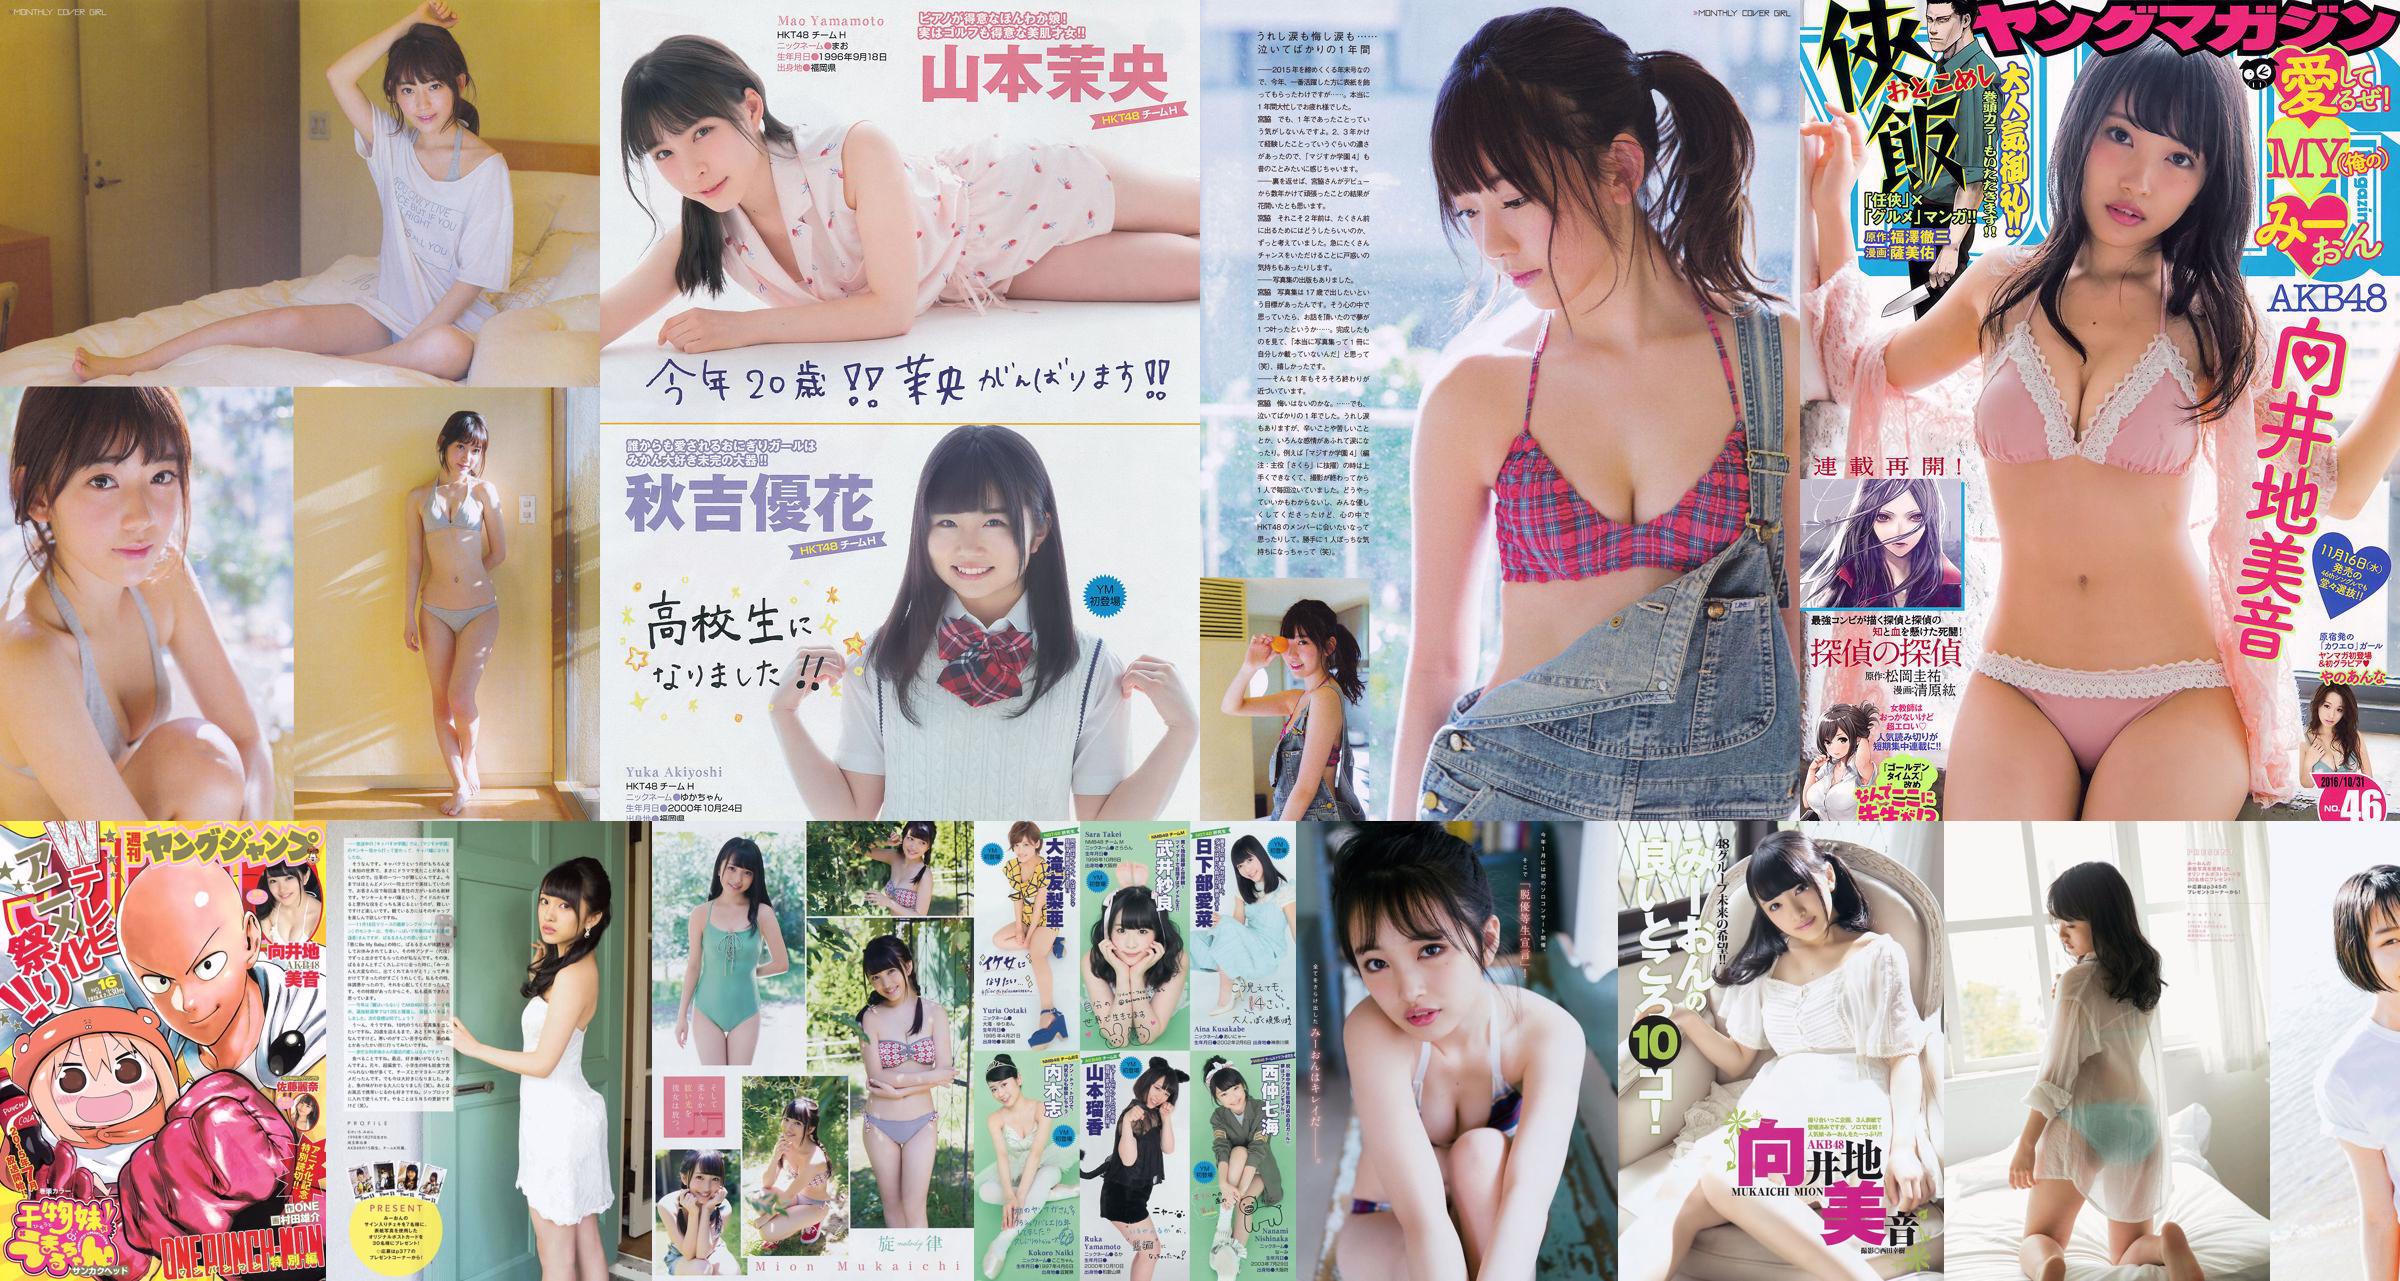 Ayaka Komatsu Risa Yoshiki Haruna Kojima Yui Yokoyama Azusa Togashi Mignon Kyoko [Weekly Playboy] 2011 No.12 Photographie No.0fa2ed Page 5